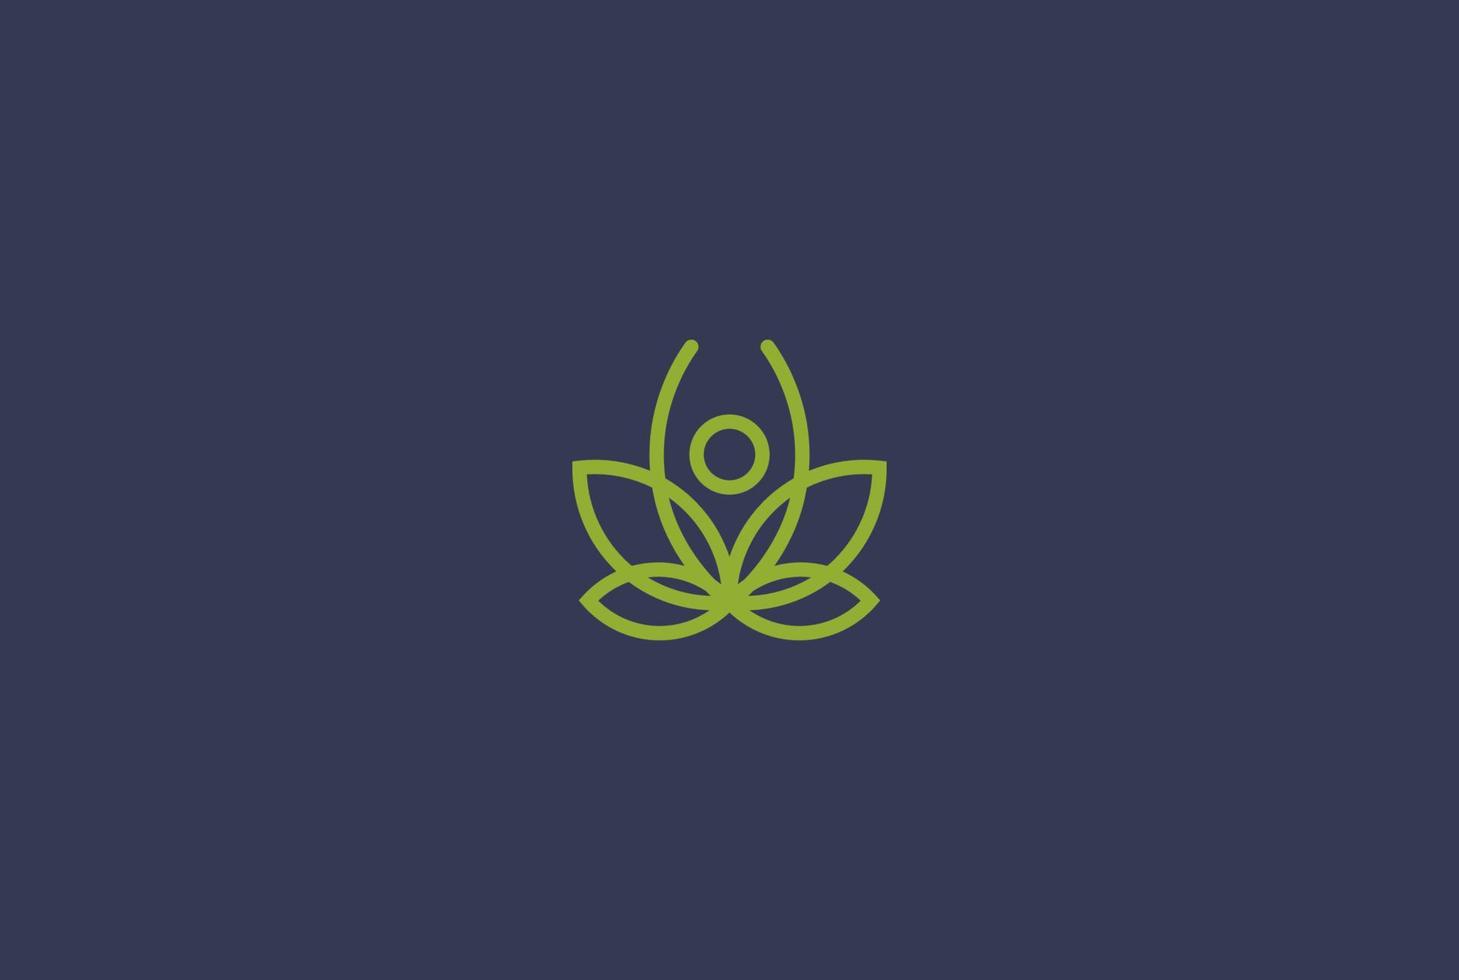 simple yoga humano minimalista con vector de diseño de logotipo de hoja de marihuana de loto o cannabis